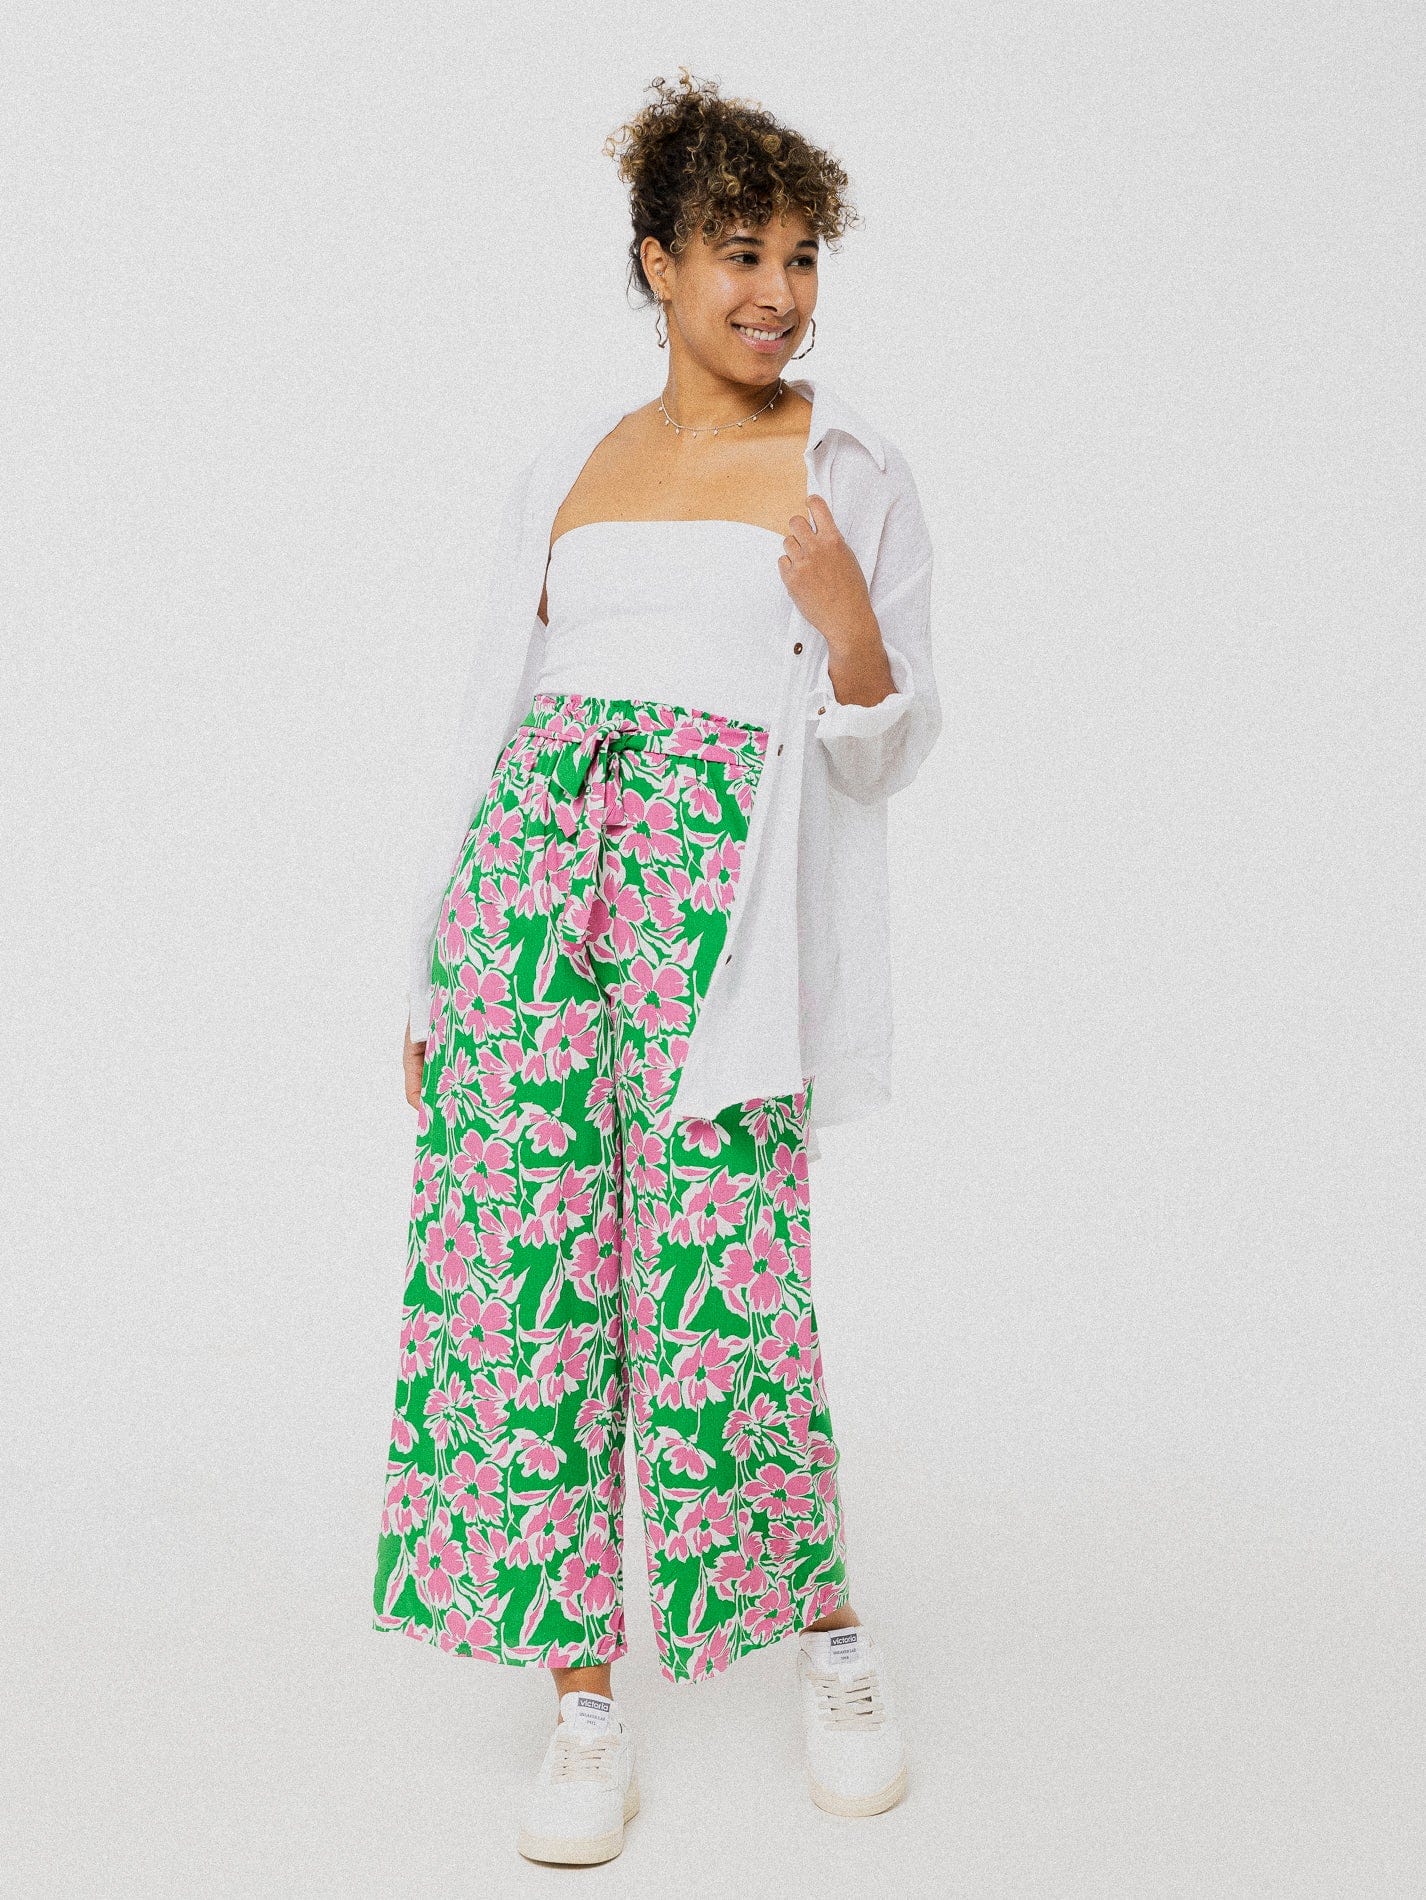 Pantalon vert à fleurs roses ample et confortable avec ceinture à la taille.